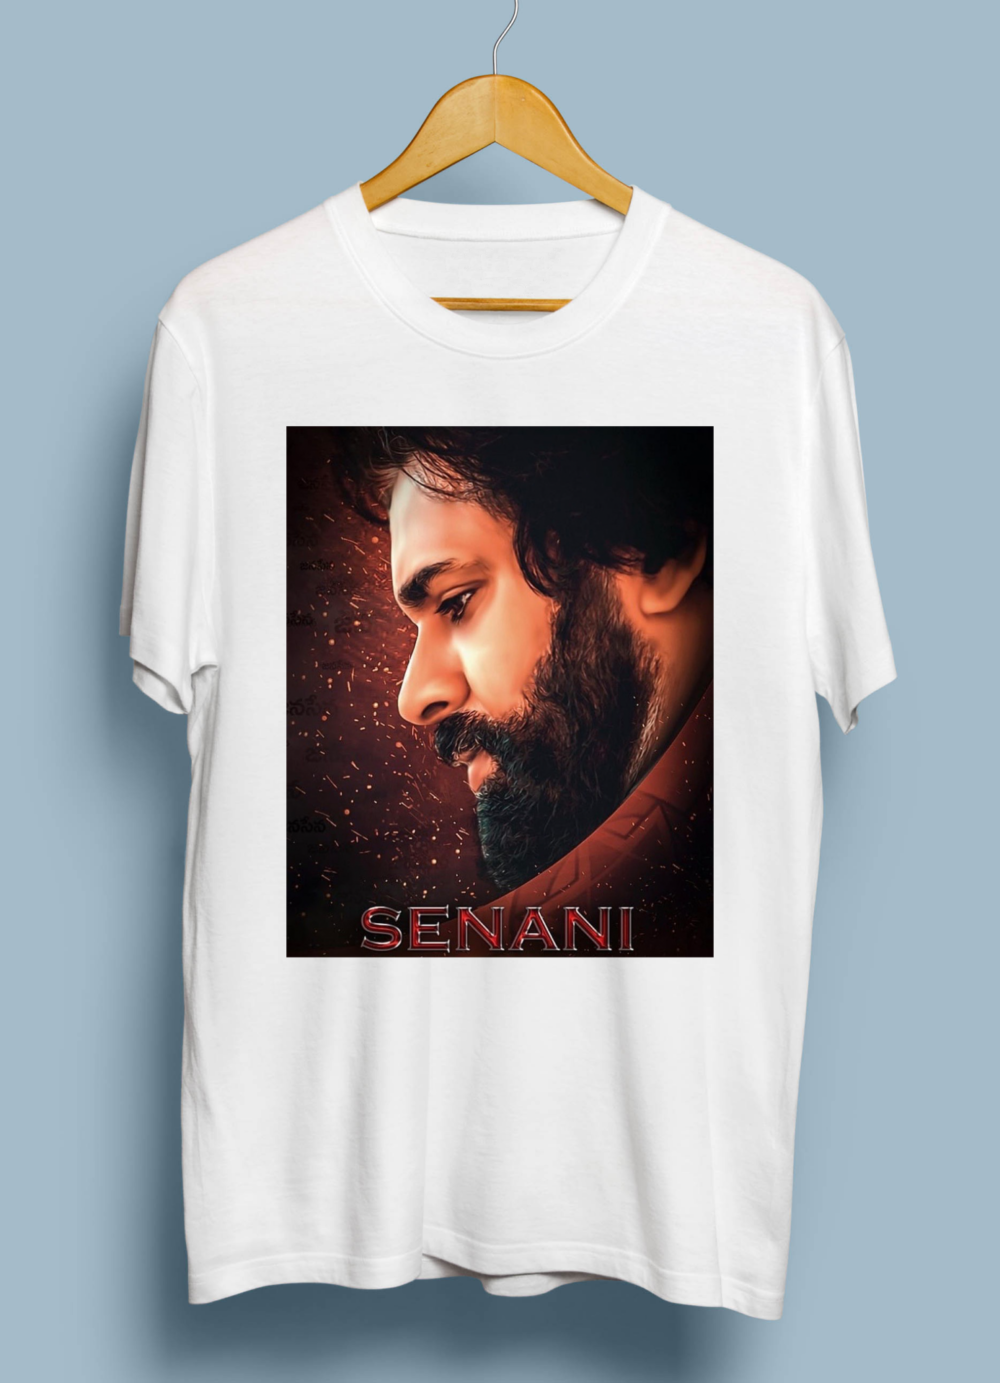 Pawan Kalyan Janasena (Senani) Graphic Printed T shirt